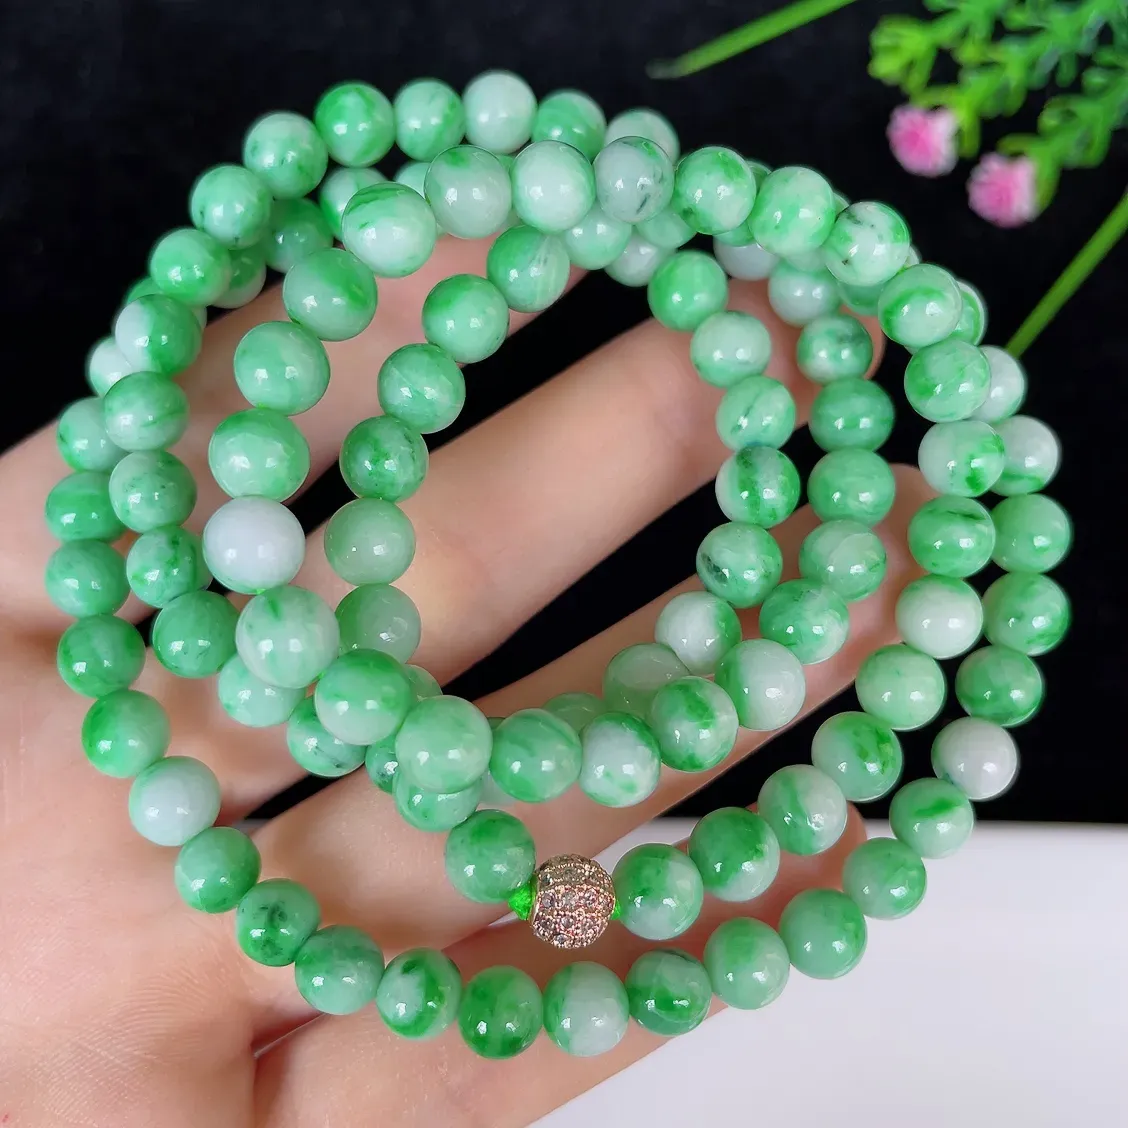 水润飘绿白底青圆珠翡翠项链#110-4544，天然翡翠A货，尺寸取一6.3mm，质地细腻，色泽鲜艳，绿色迷人，佩戴效果佳！！